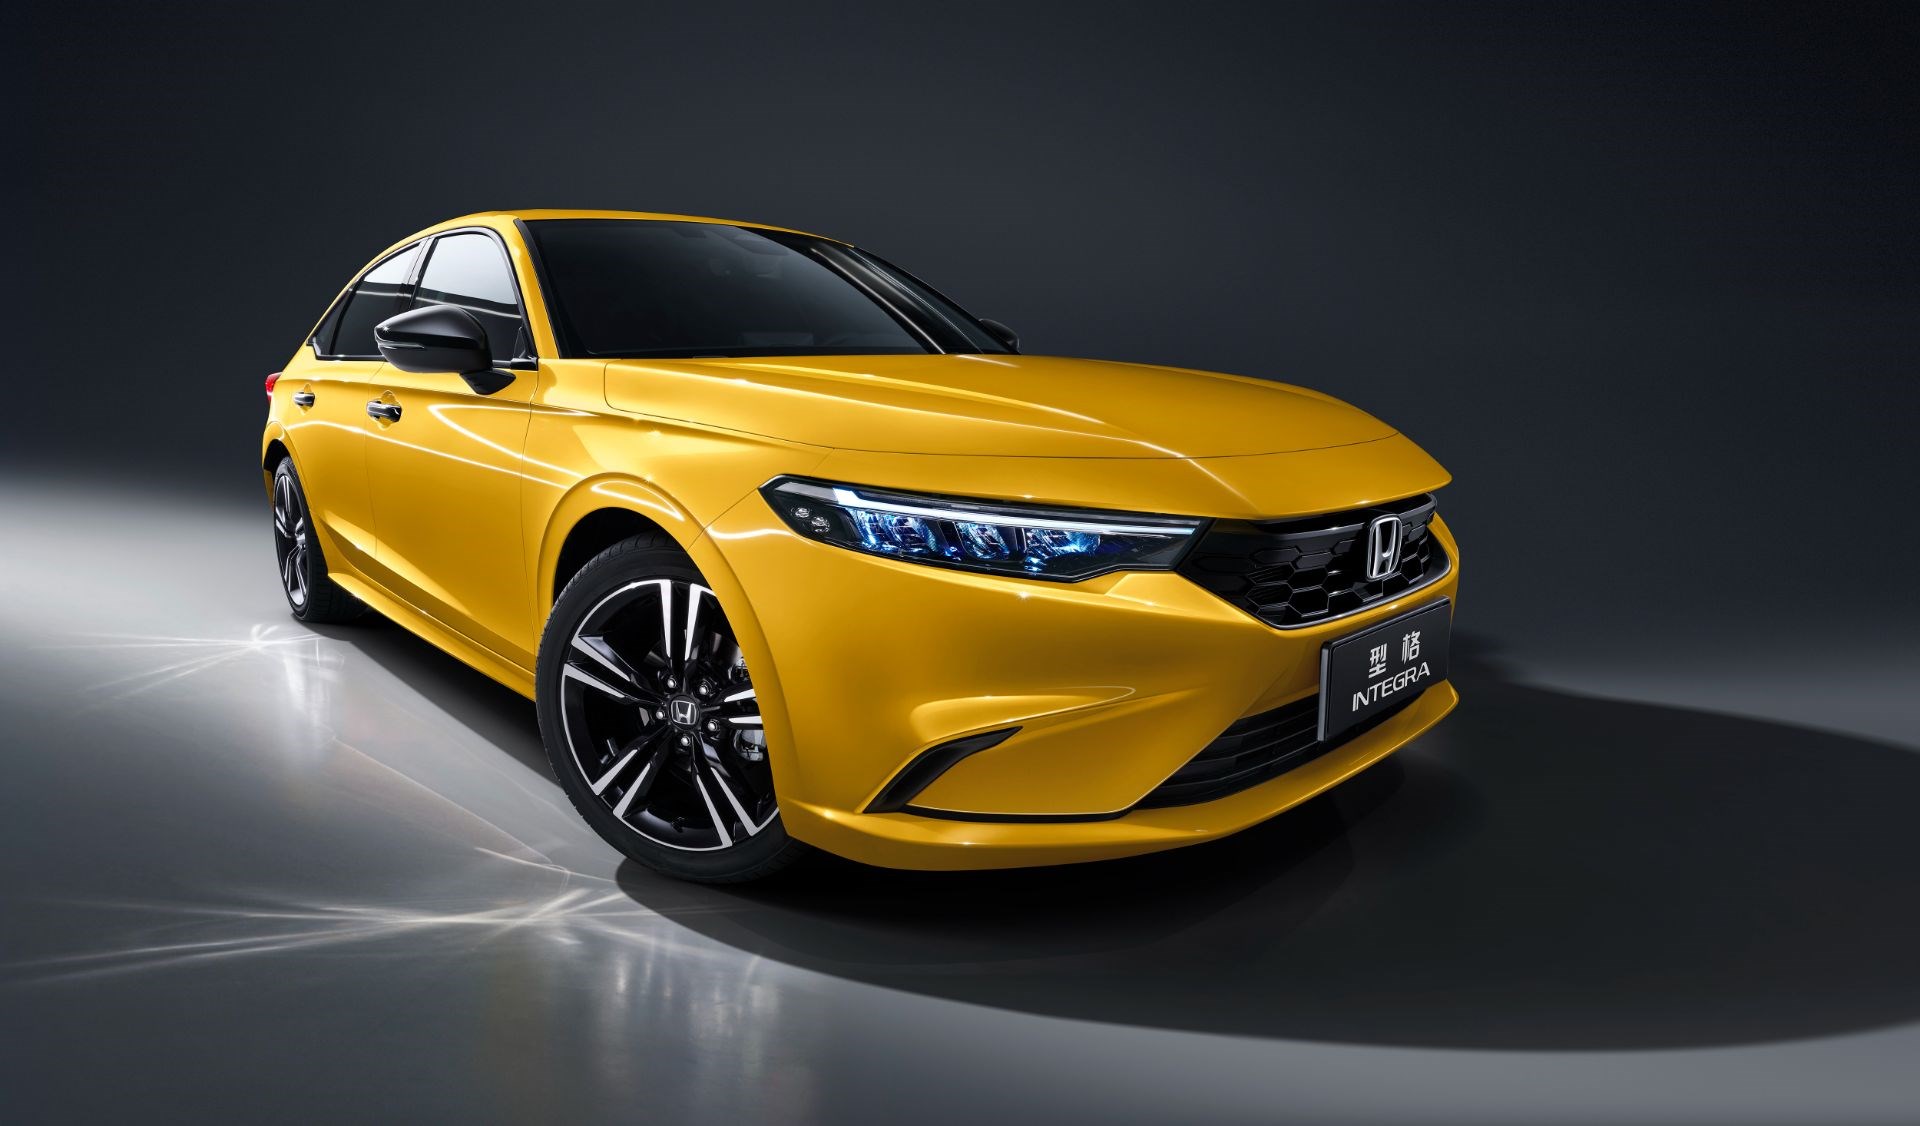 Yeni Civic'in sportif kardeşi 2022 Honda Integra Çin'de satılacak